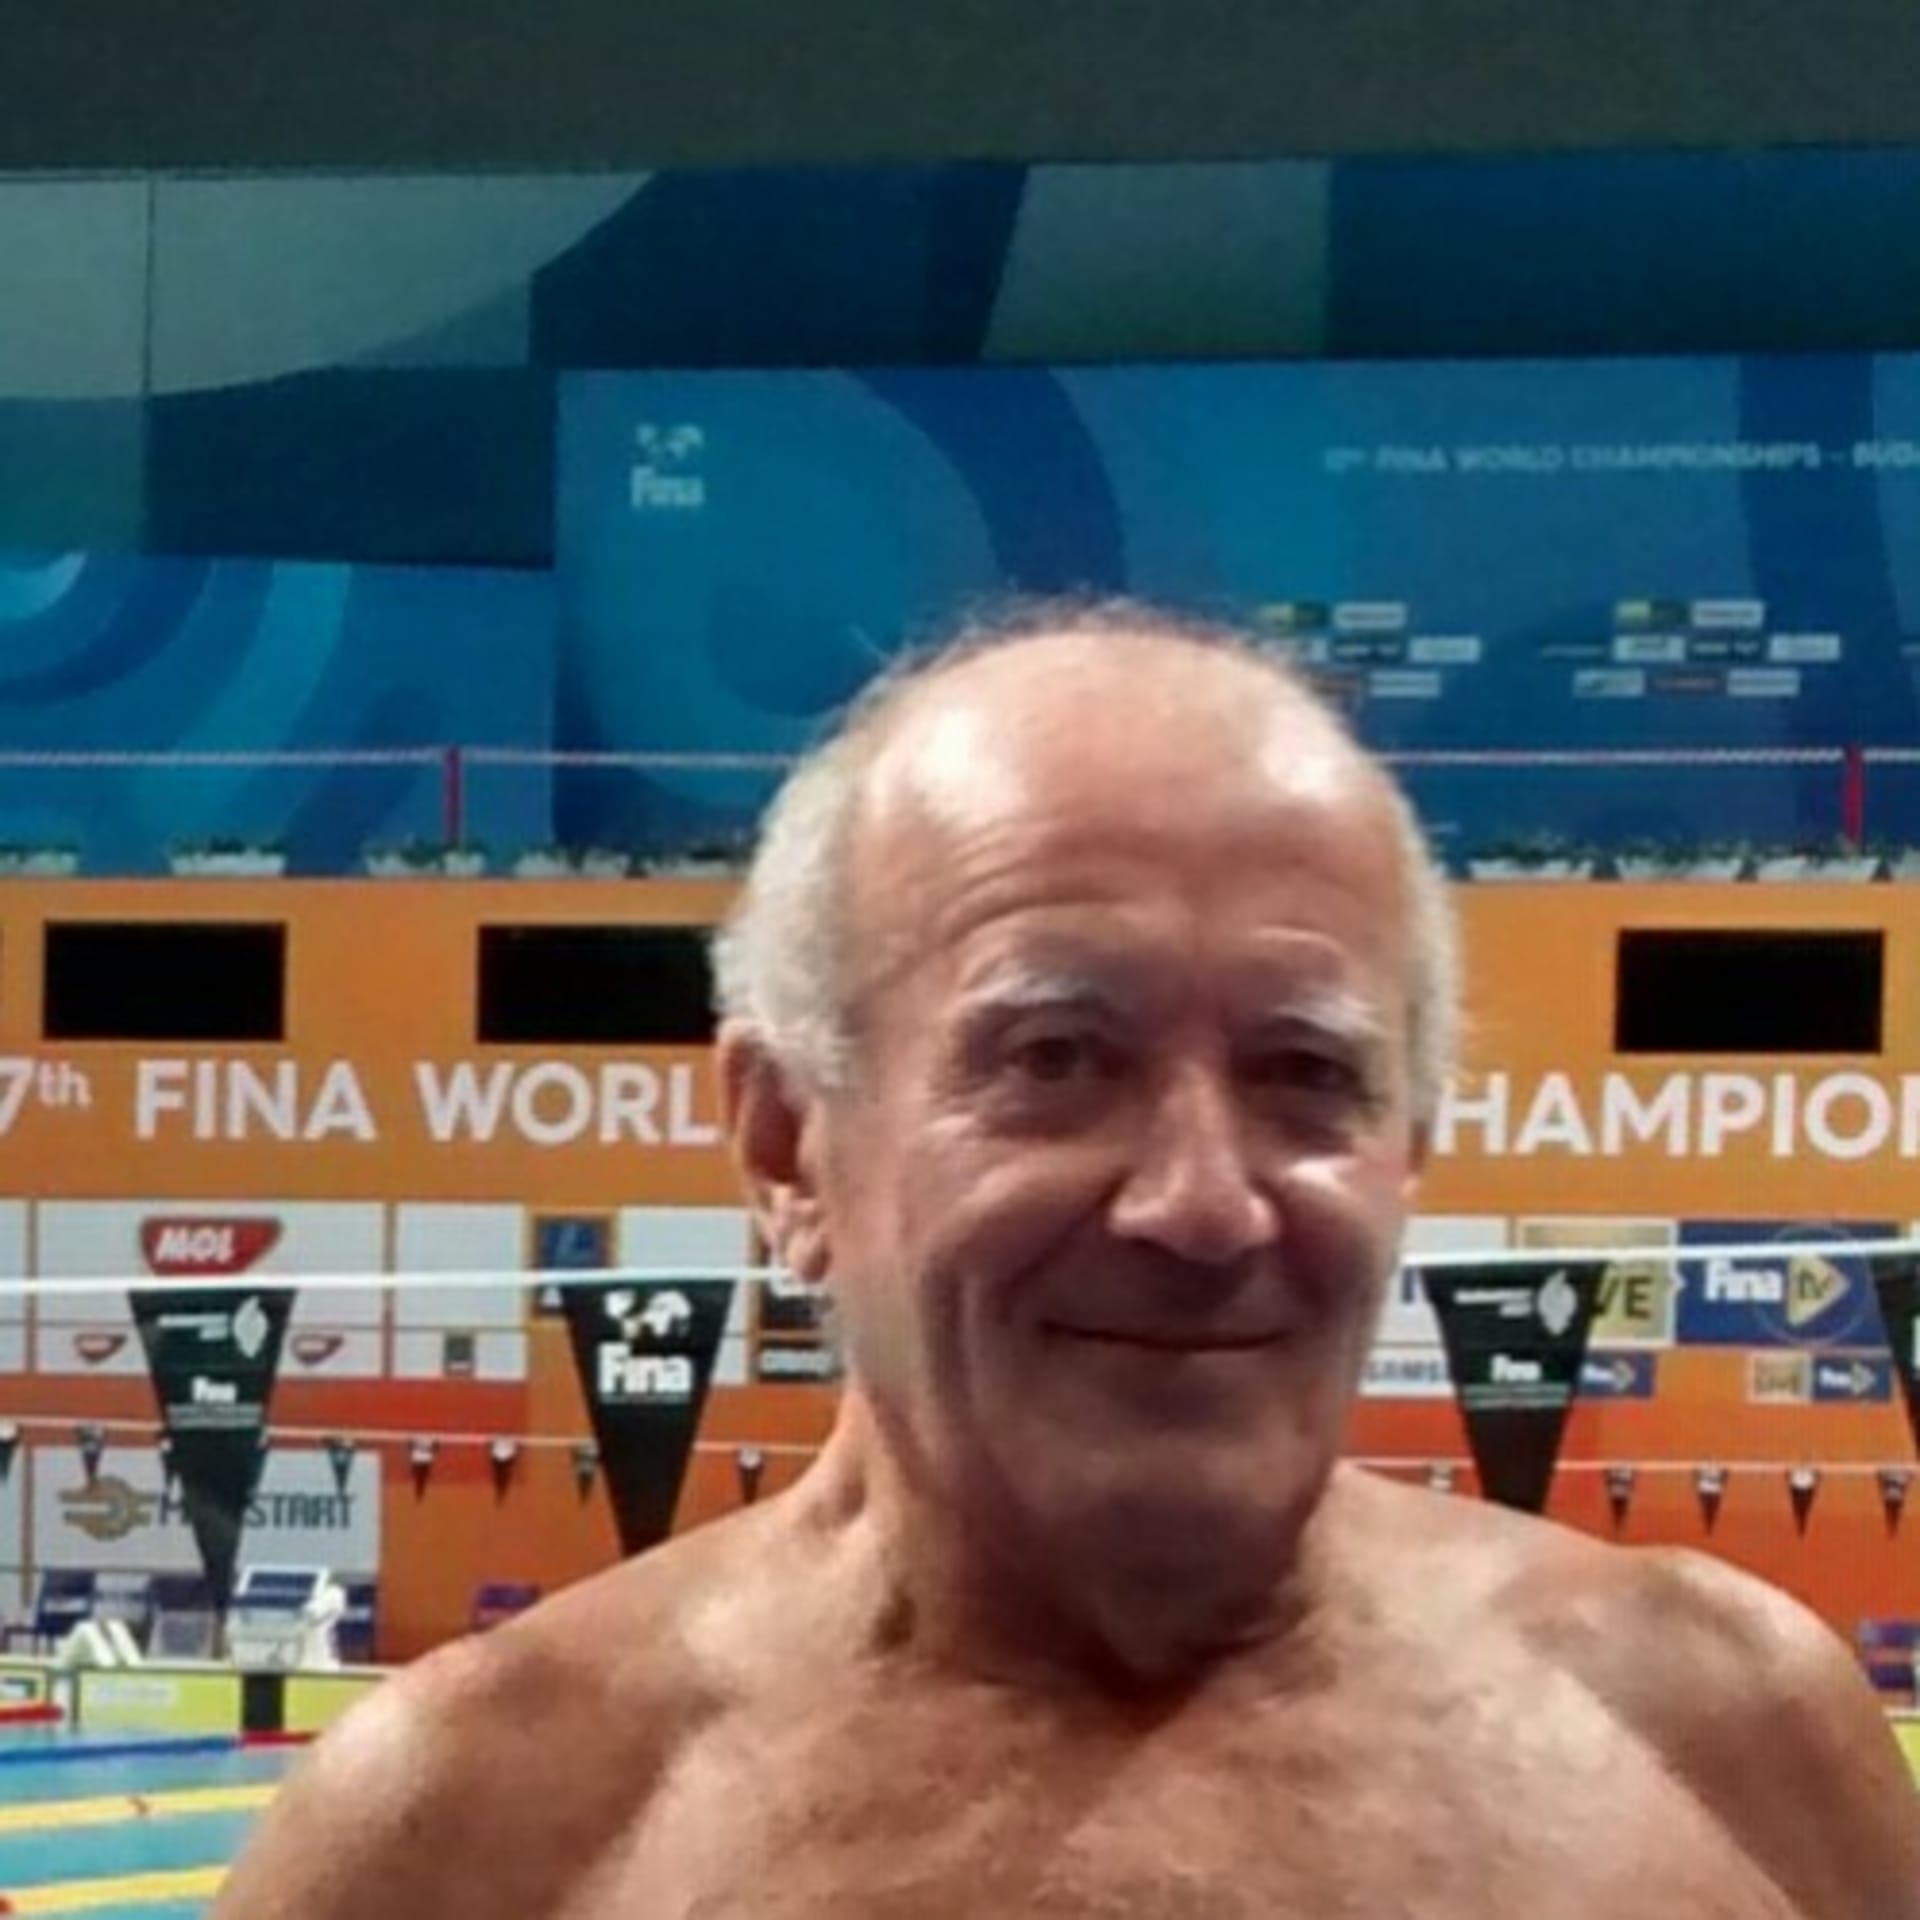 Španělský plavec Fernando Álvarez je oslavován jako hrdina